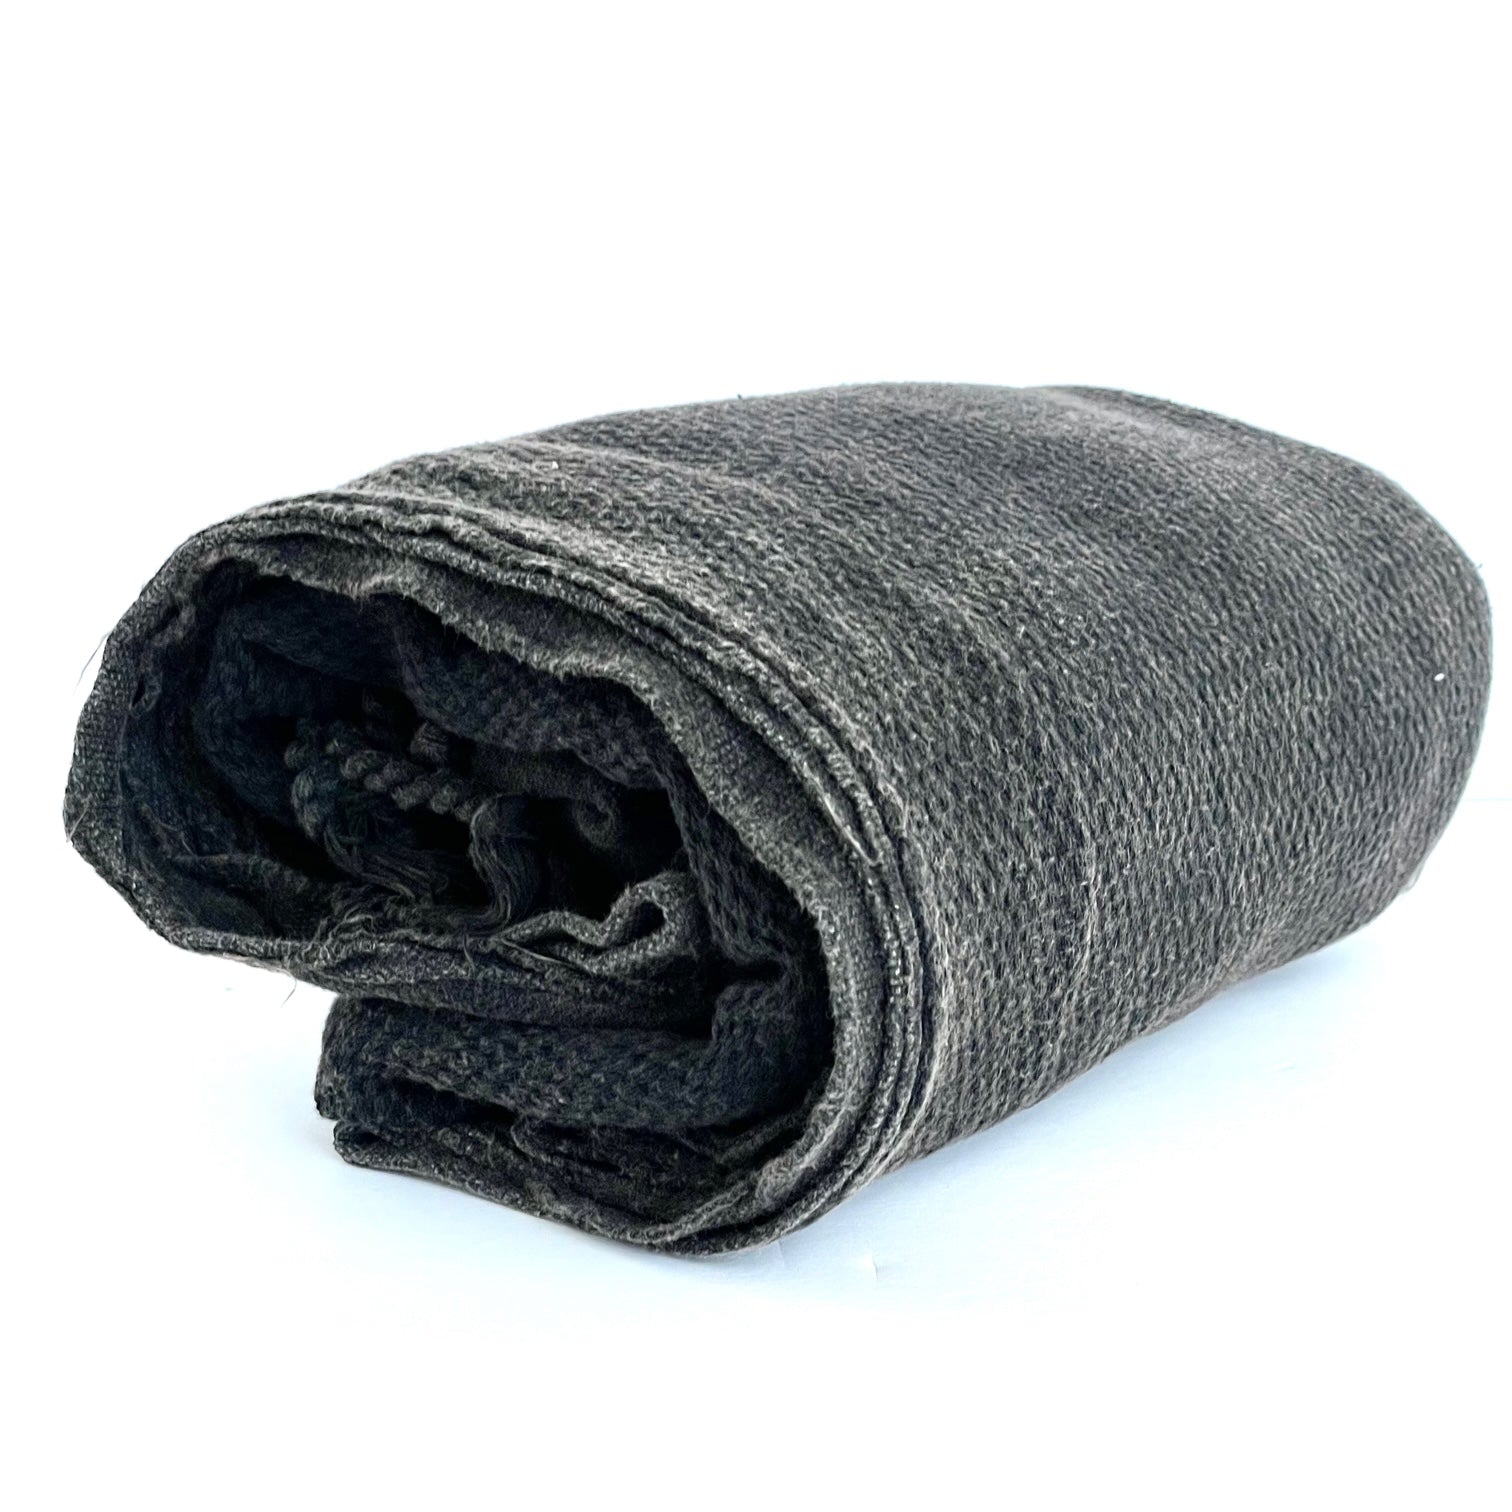 Premium Stone Washed Turkish Towel